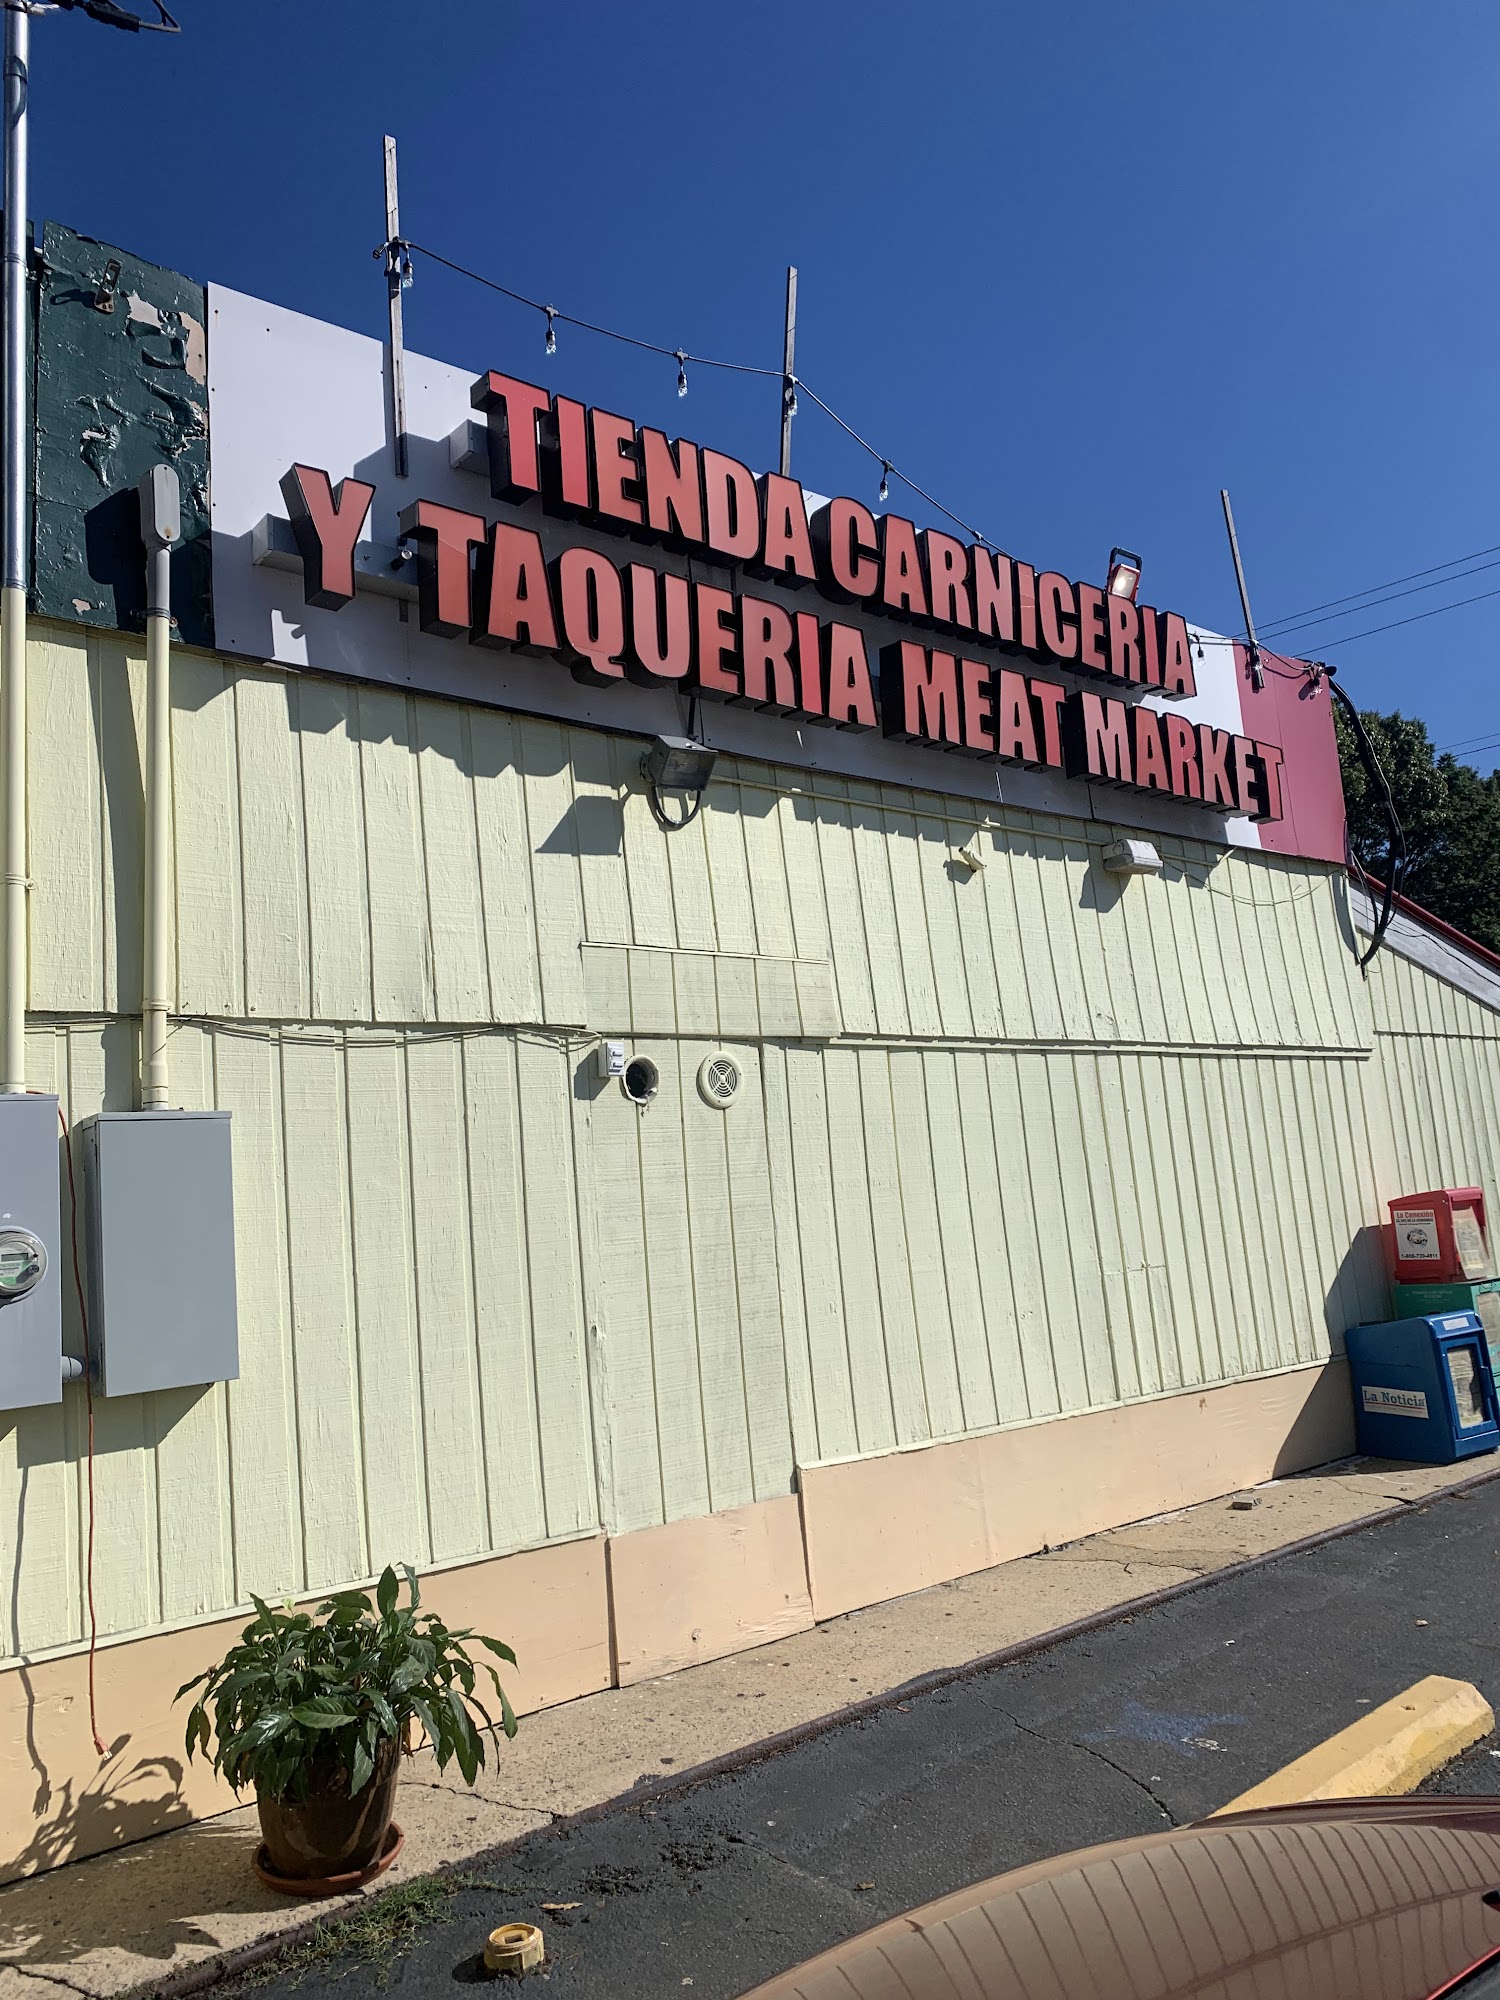 Tienda Carniceria Y Taqueria Meat Market